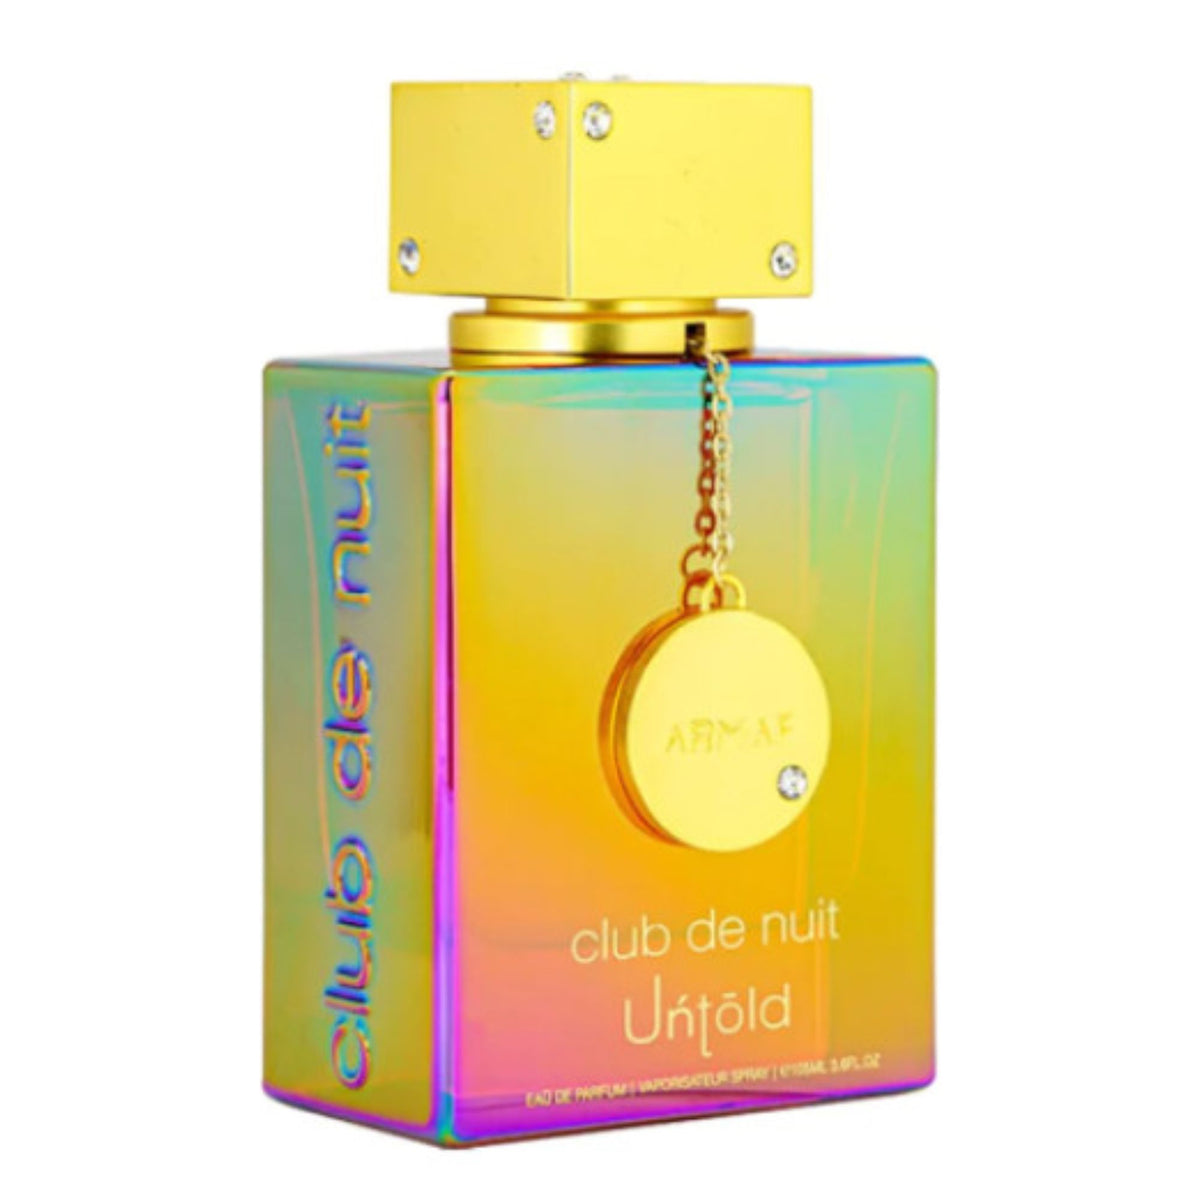 Perfume Untold Armaf Unisex Eau de Parfum 105ml